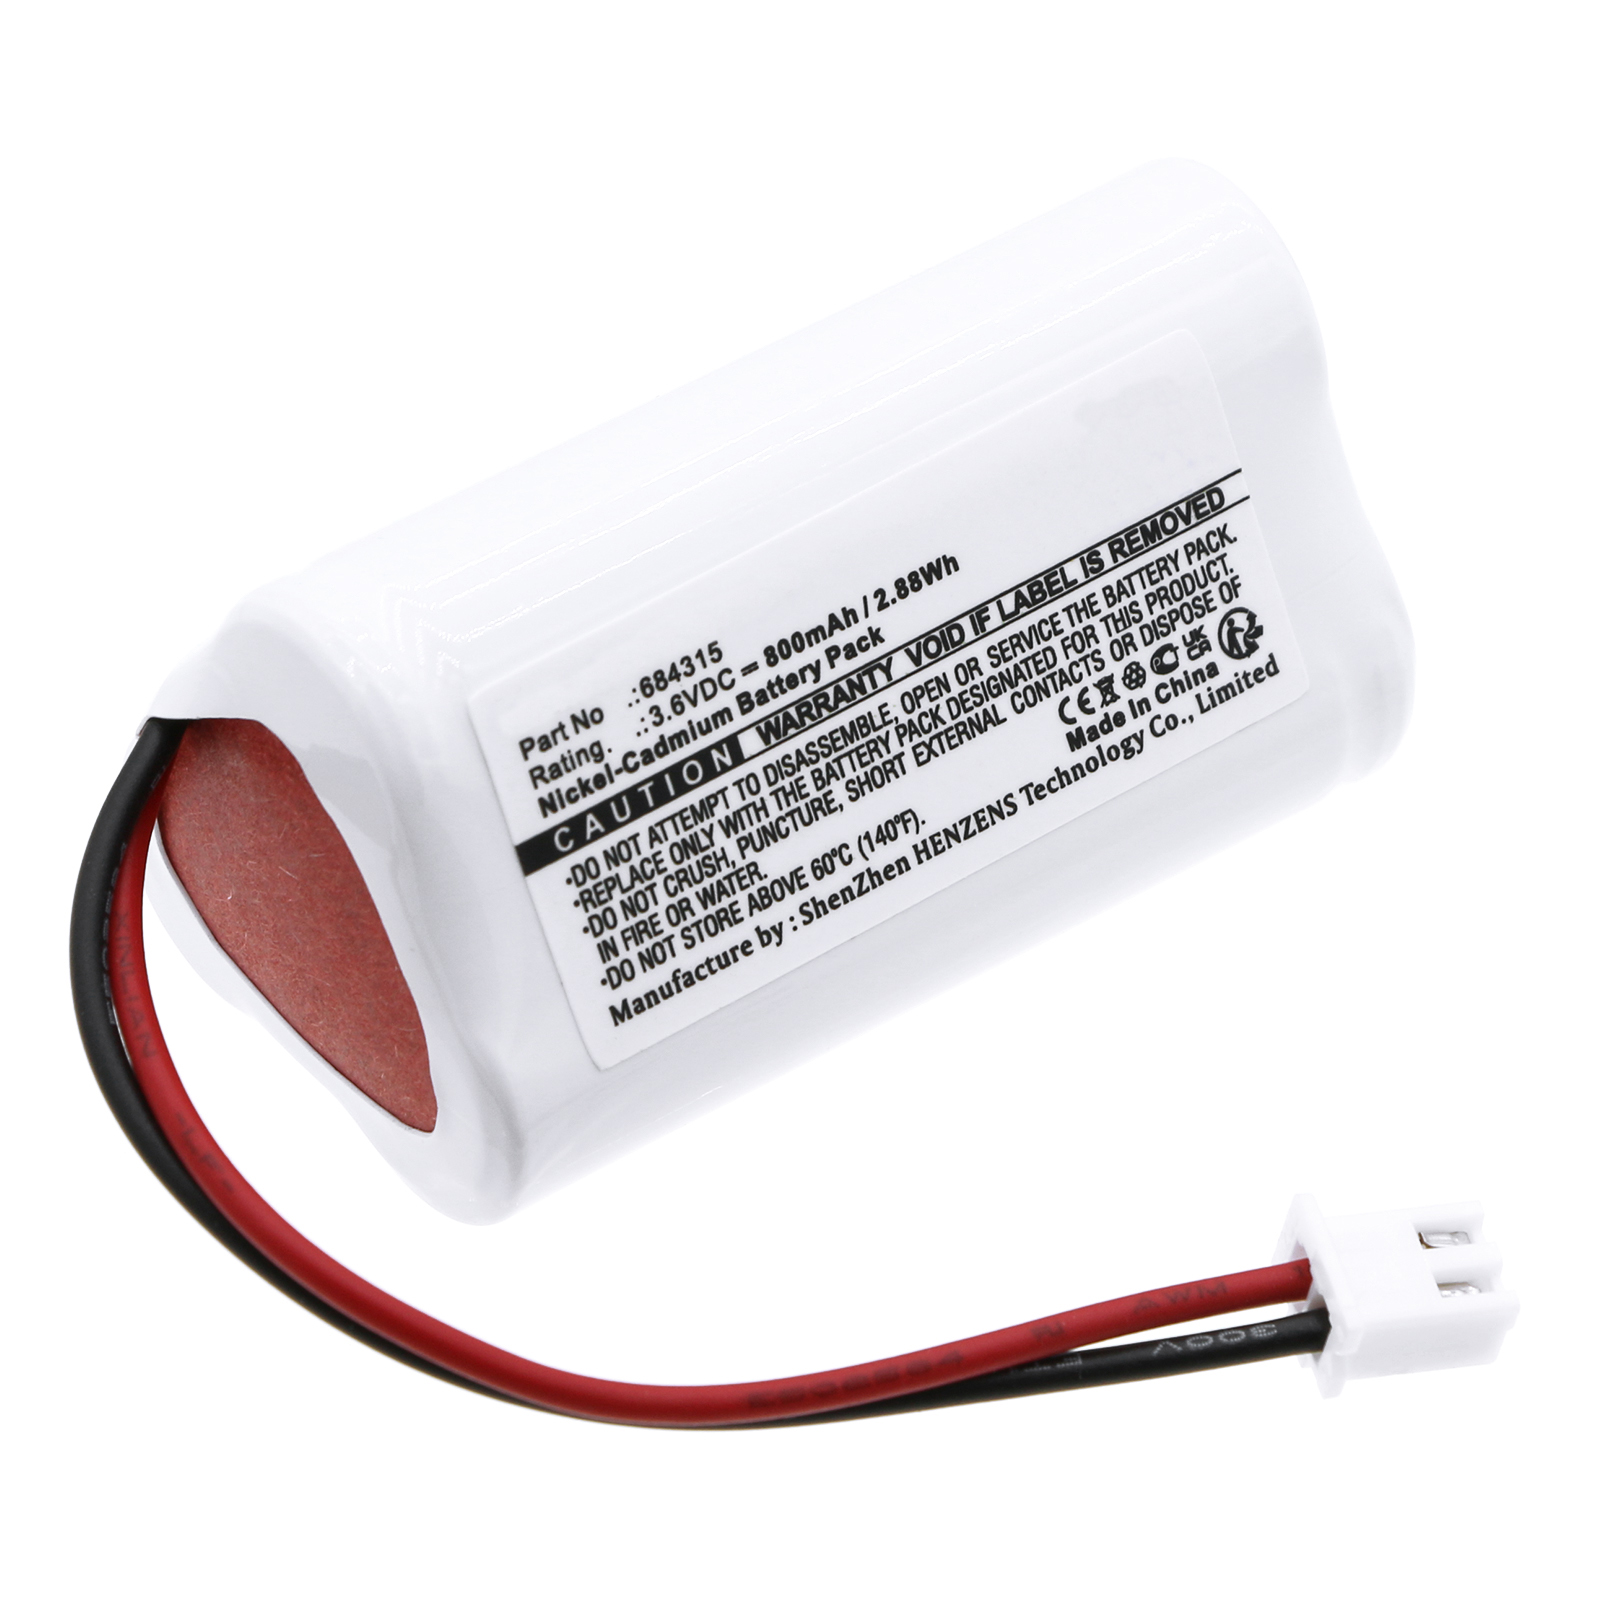 Synergy Digital Emergency Lighting Battery, Compatible with Lumenxl 684315 Emergency Lighting Battery (Ni-CD, 3.6V, 800mAh)